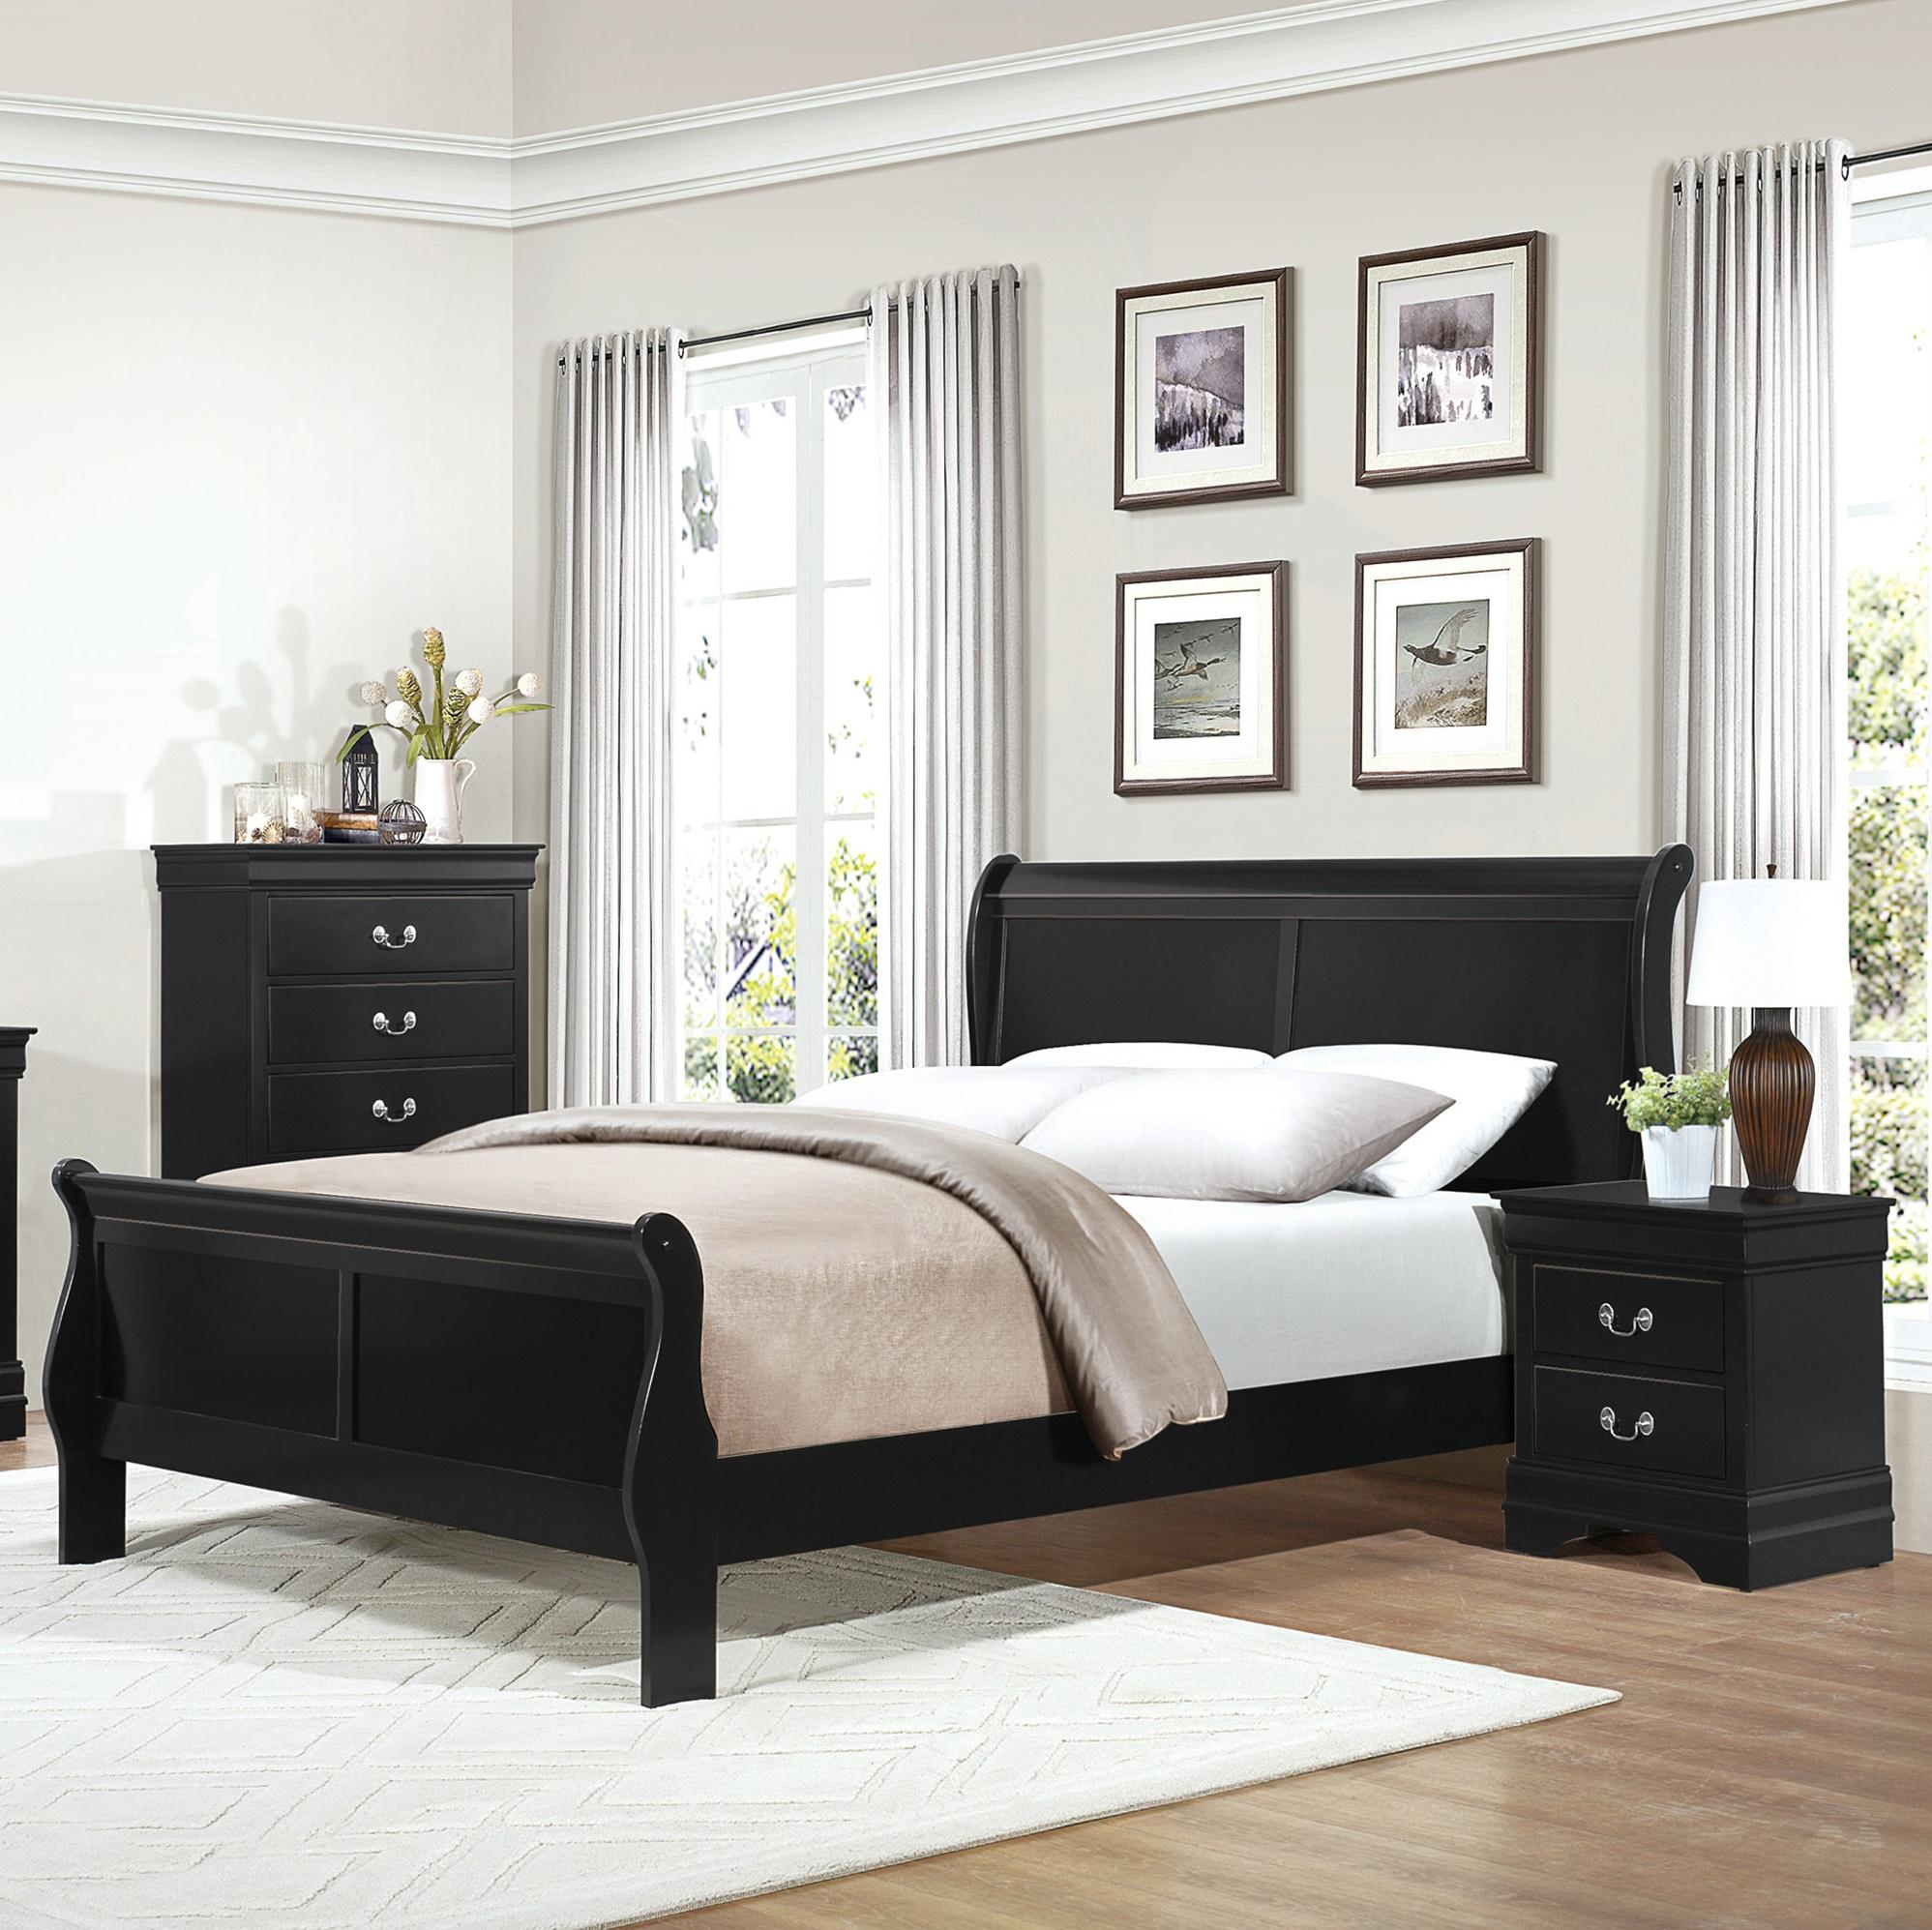 

    
Traditional Black Wood CAL Bedroom Set 3pcs Homelegance 2147KBK-1CK* Mayville
